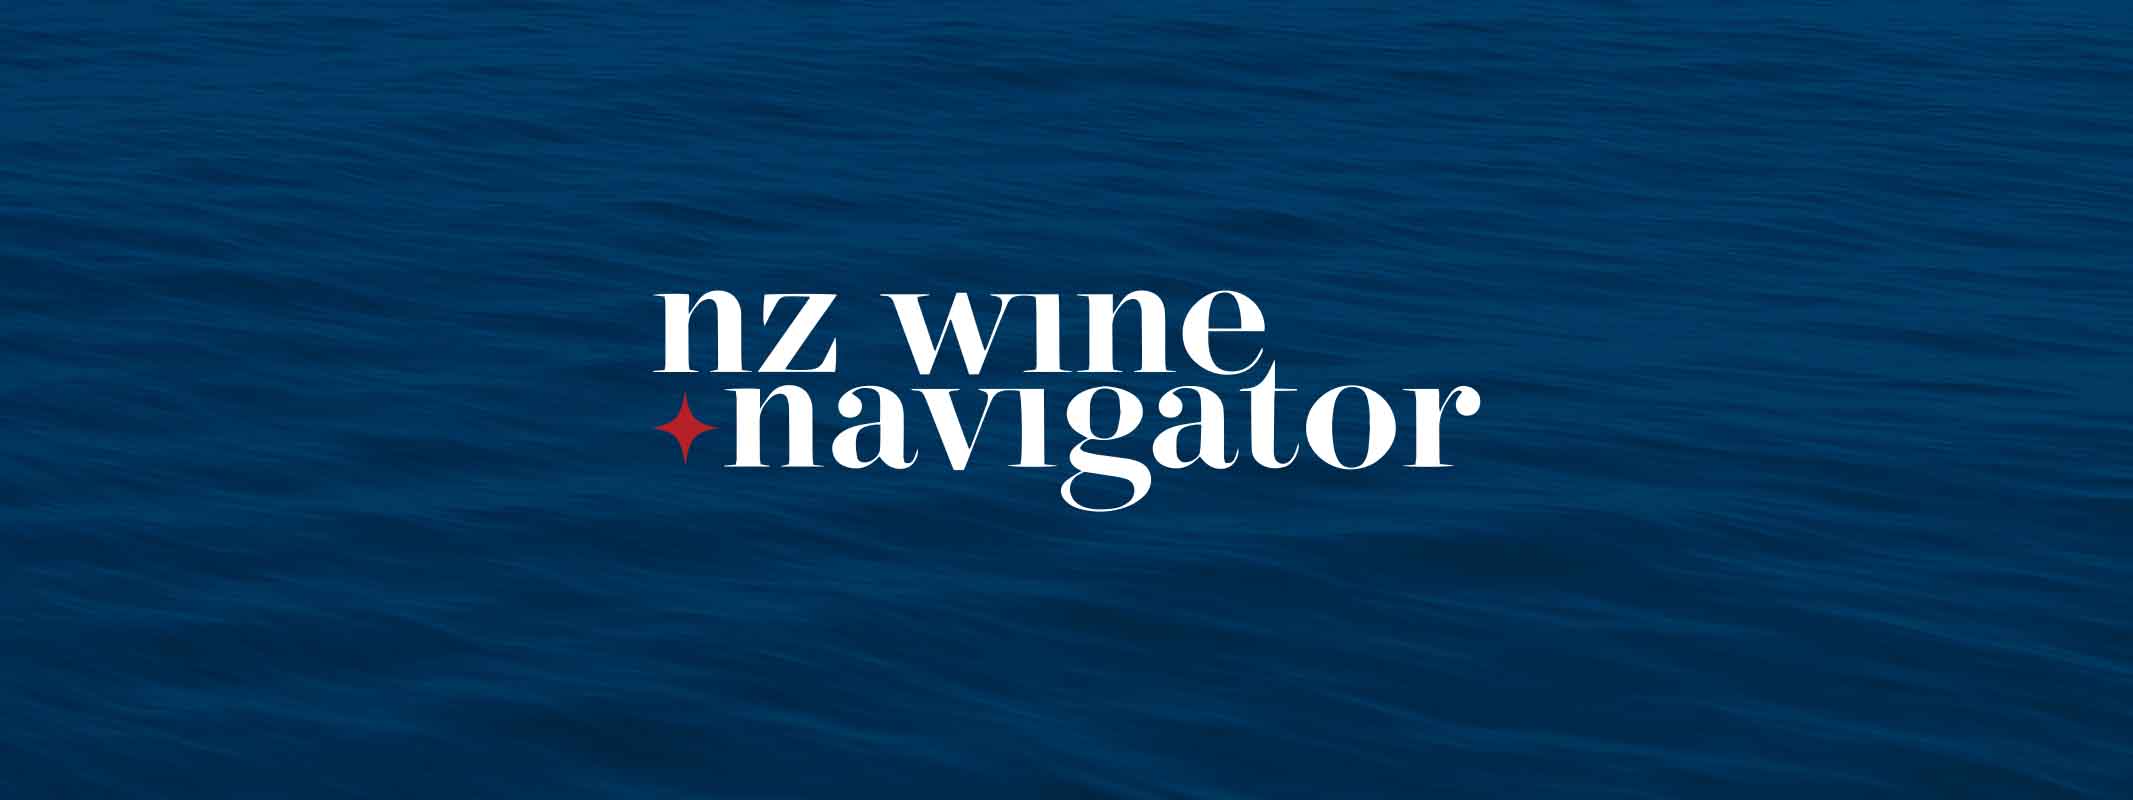 NZ Wine Navigator logo on a styled background 